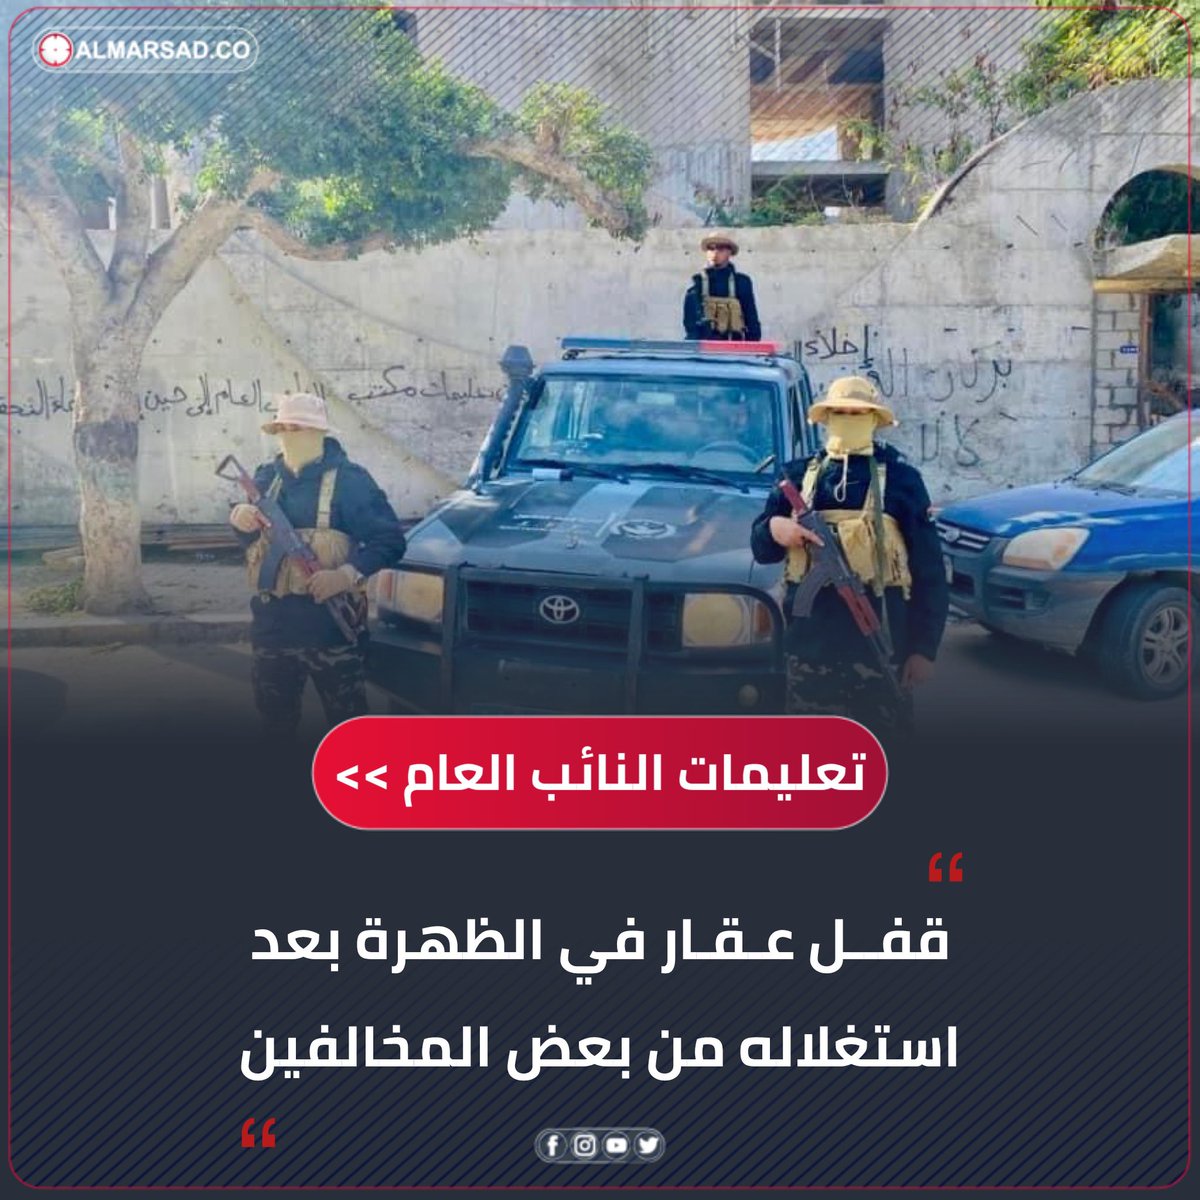 خبر | بناءً على تعليمات النائب العام .. ' إنفاذ القانون ' تقفل عقار في الظهرة #طرابلس بعد استغلاله من بعض ' المخالفين ' و تتخذ الإجراءات القانونية بالخصوص. #ليبيا #المرصد